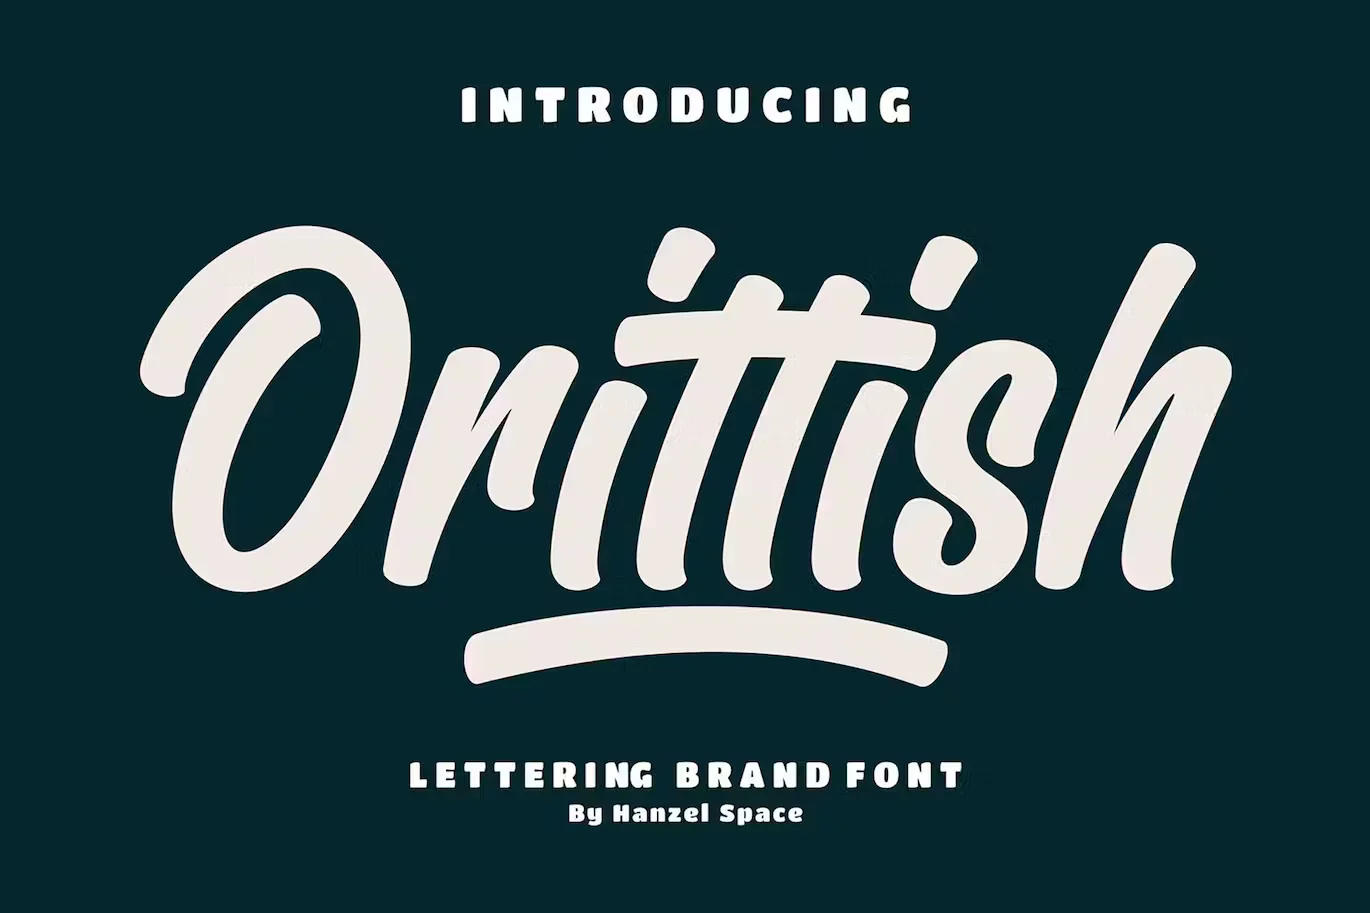 Orittish | Lettering Brand Font